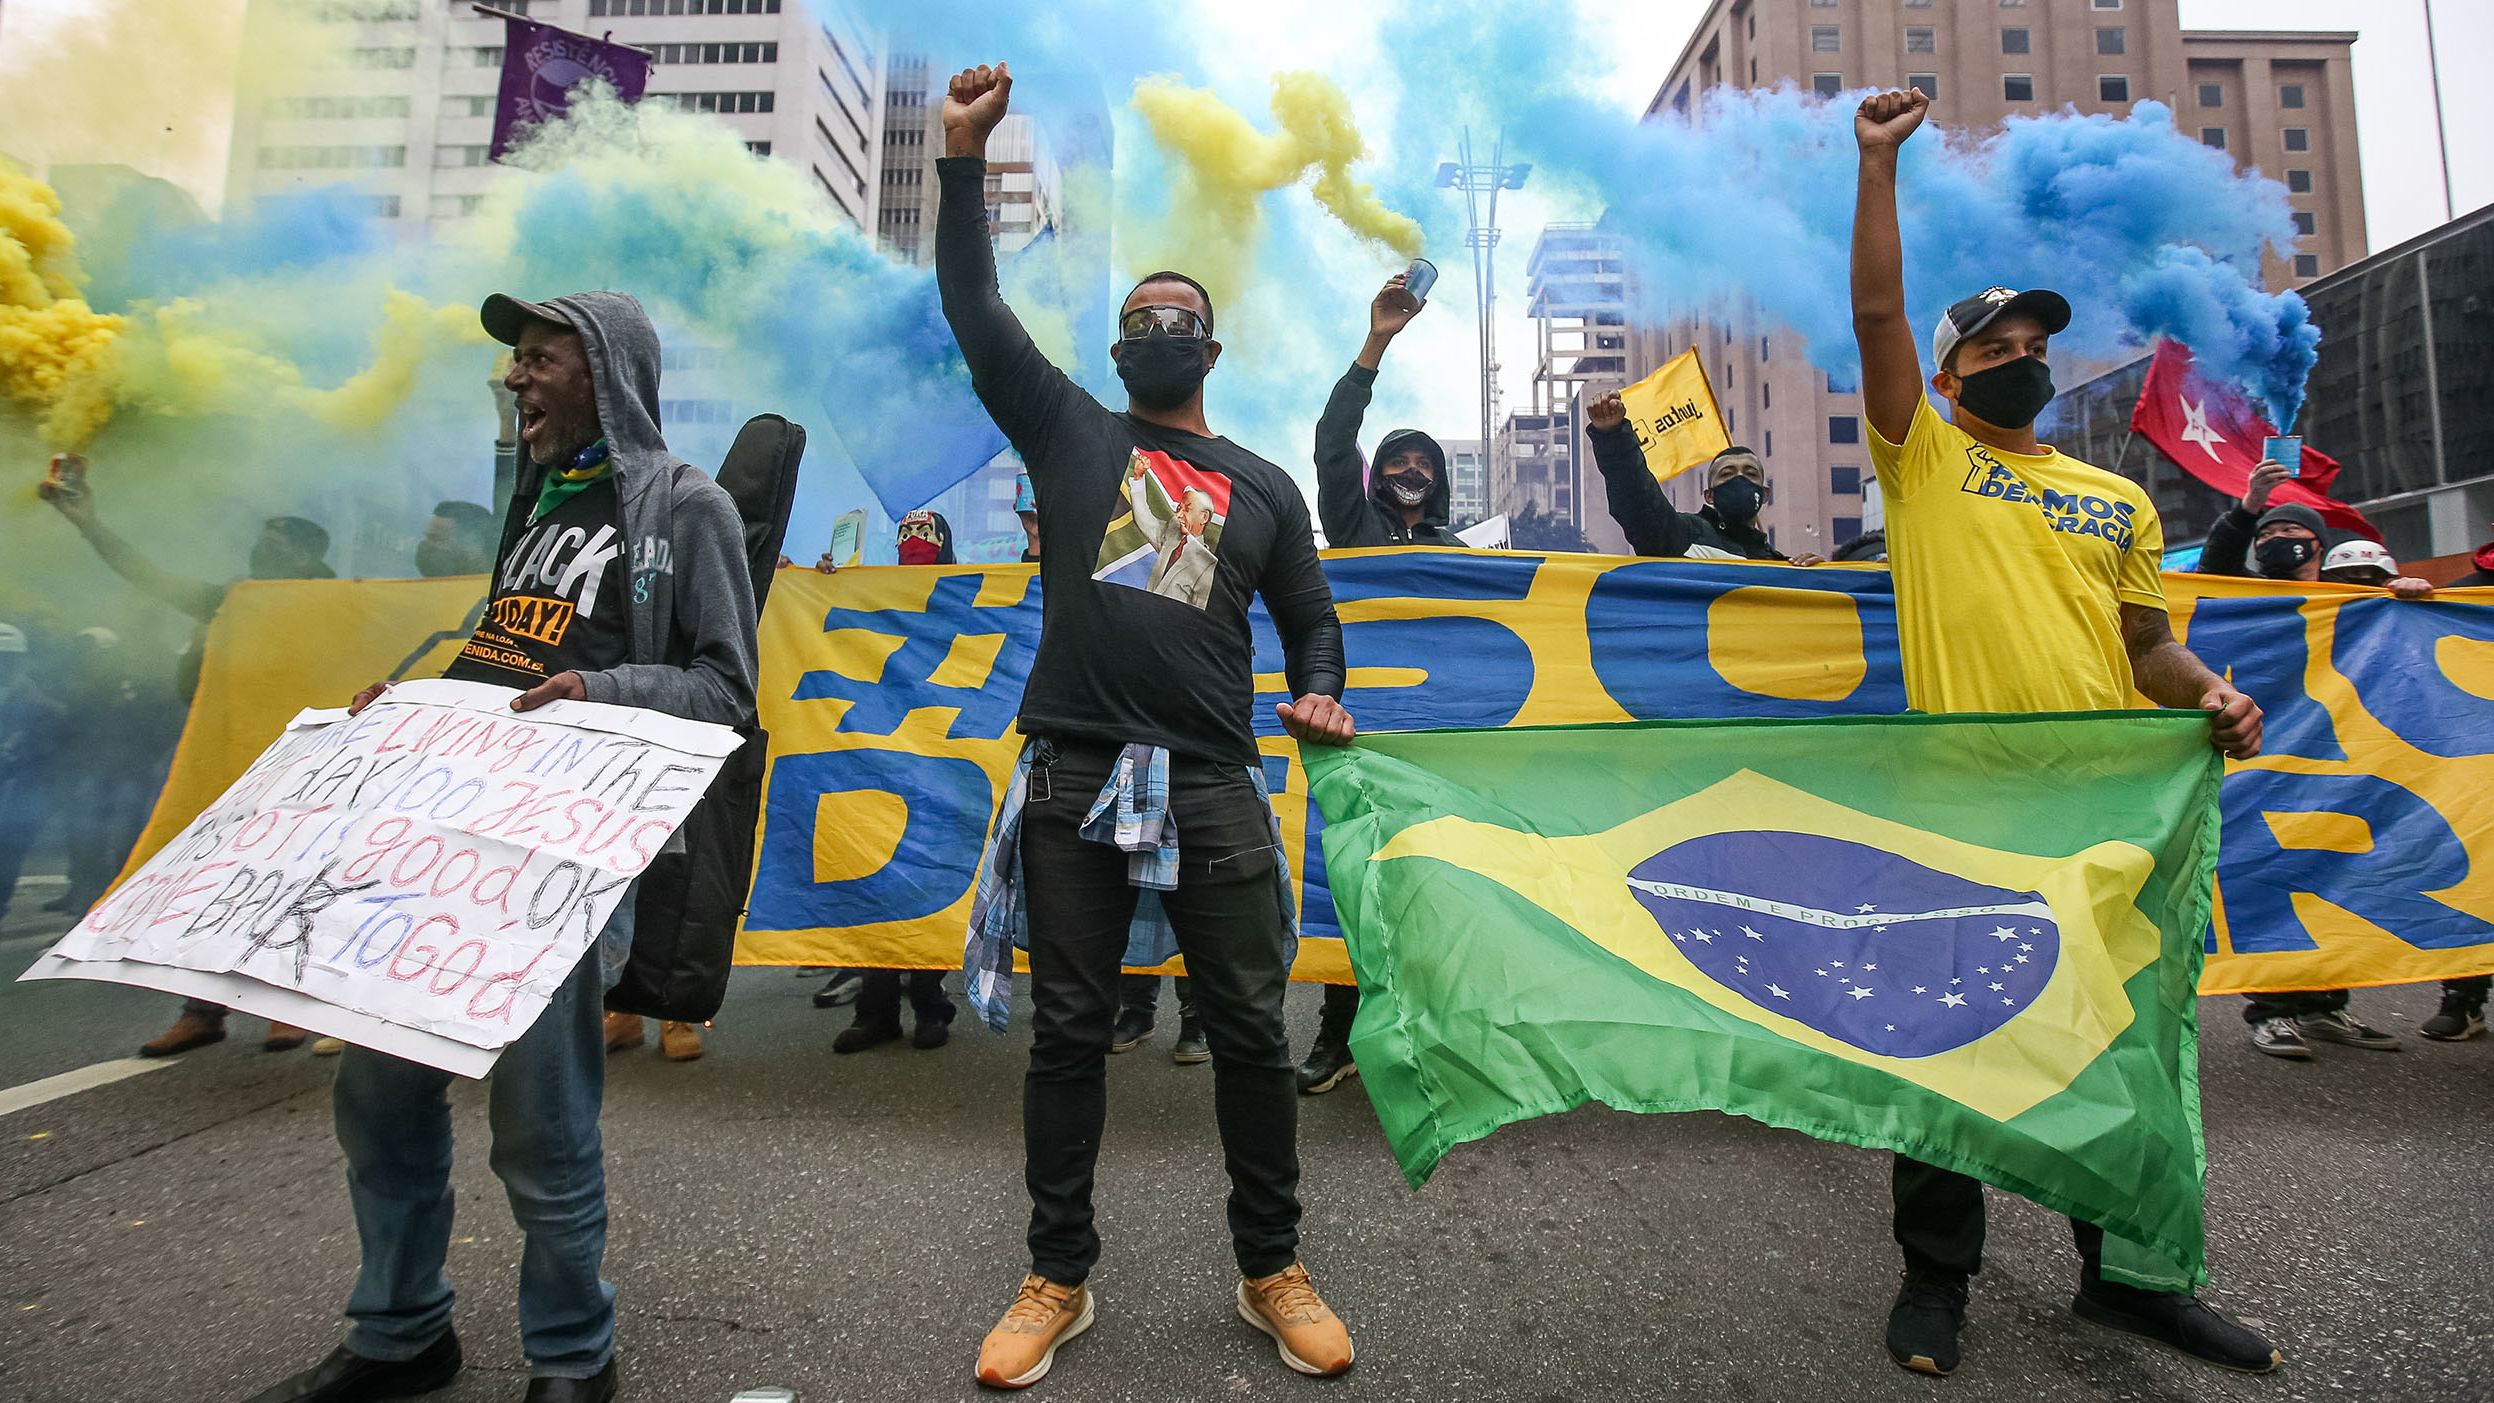 Yüz maskesi takan göstericiler, 14 Haziran 2020'de Brezilya'nın Sao Paulo kentinde koronavirüs (COVID-19) salgınının ortasında düzenlenen bir protesto sırasında Paulista Bulvarı'nda yumruklarını kaldırıyor.